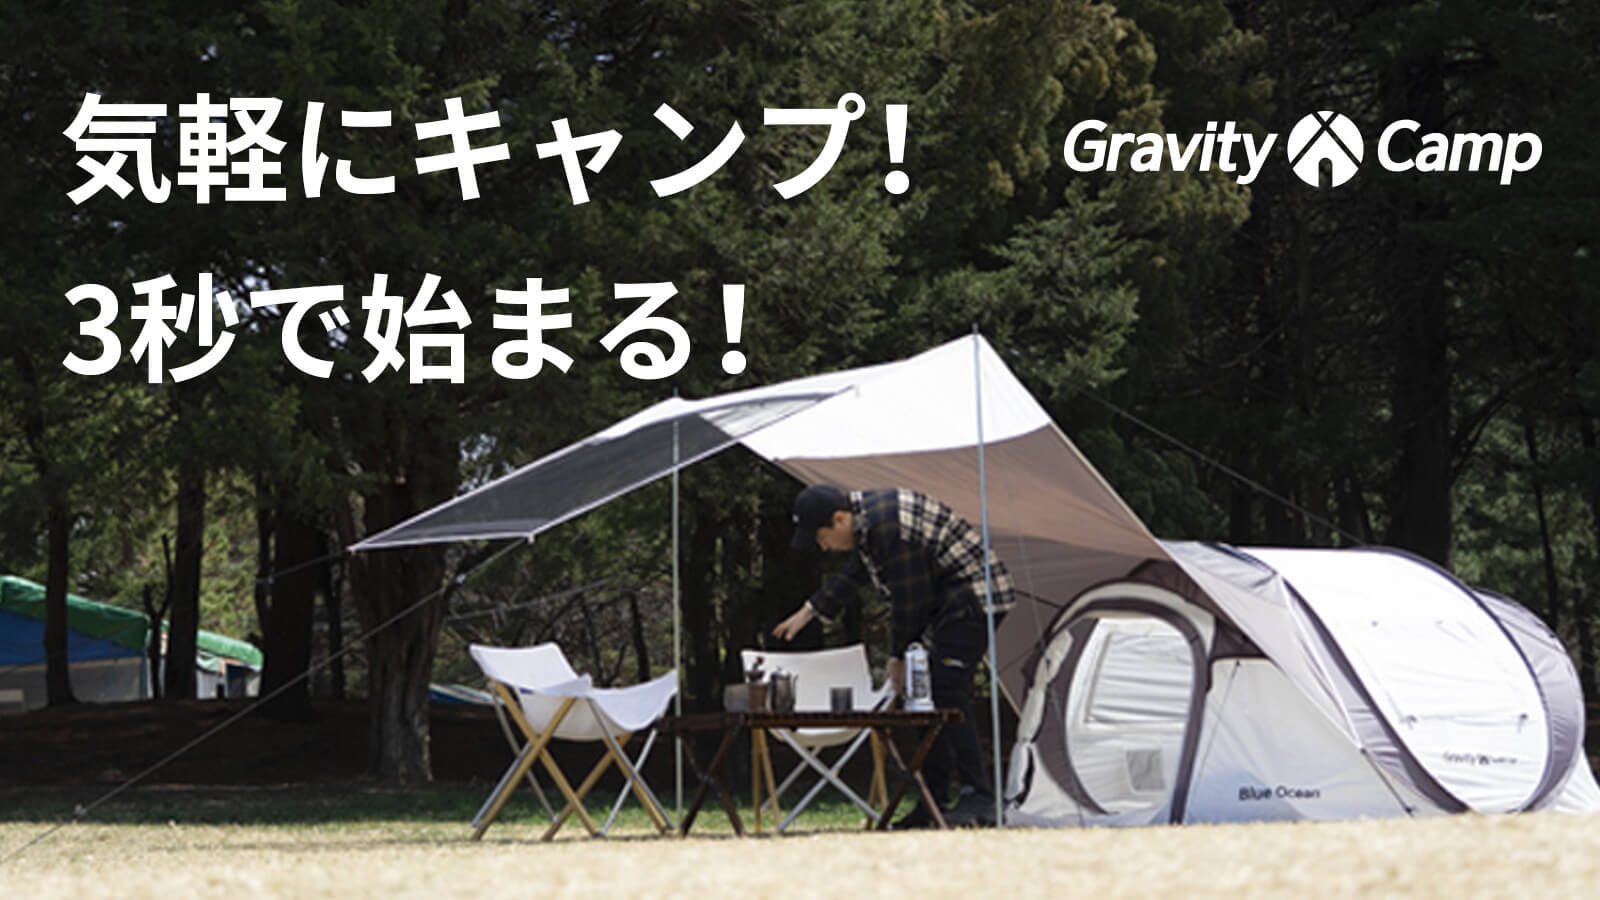 GravityCamp